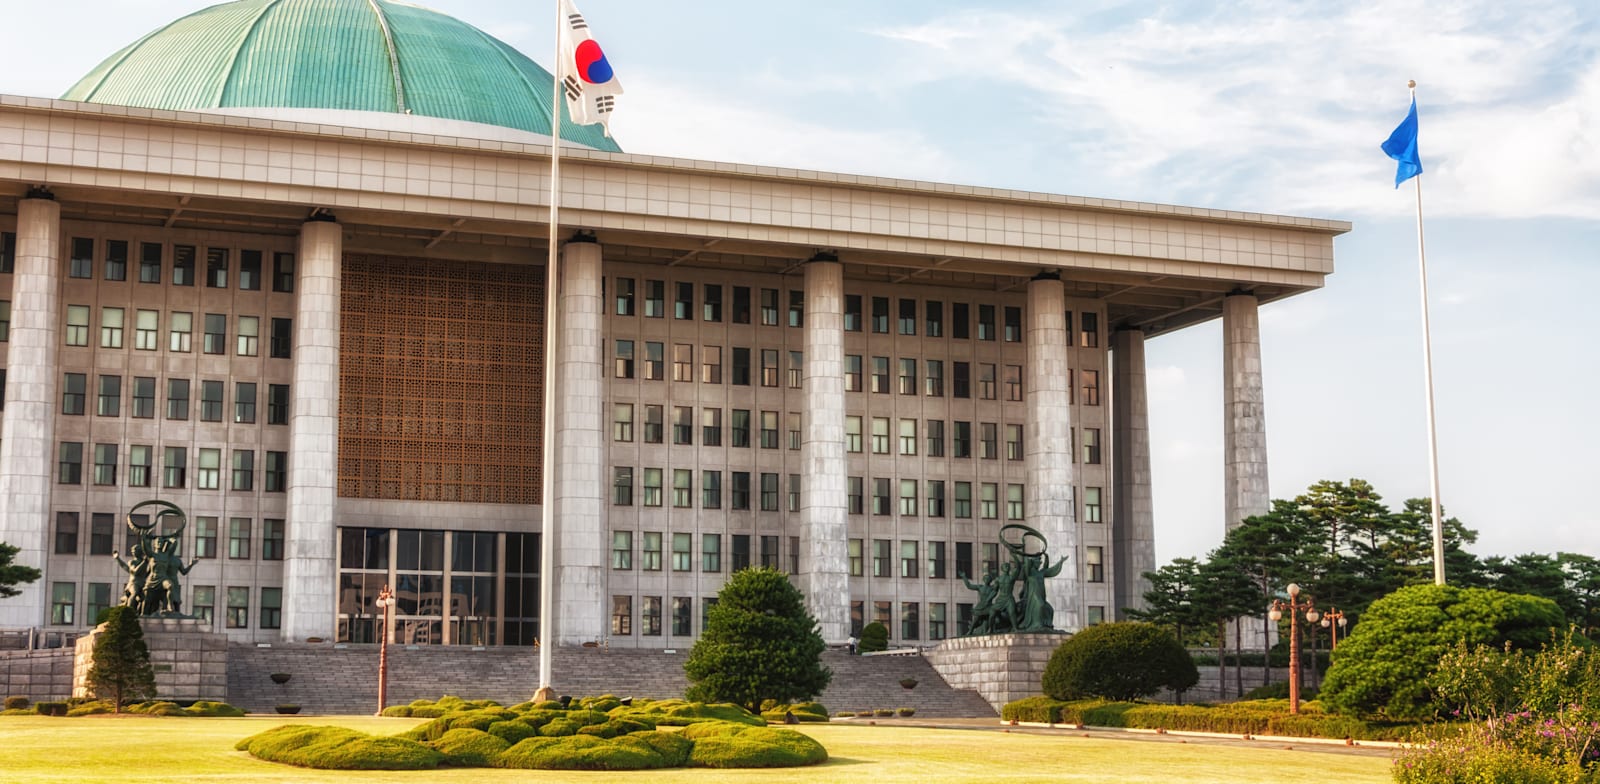 בניין האספה הלאומית של קוריאה הדרומית בסיאול / צילום: Shutterstock, Joshua Davenport